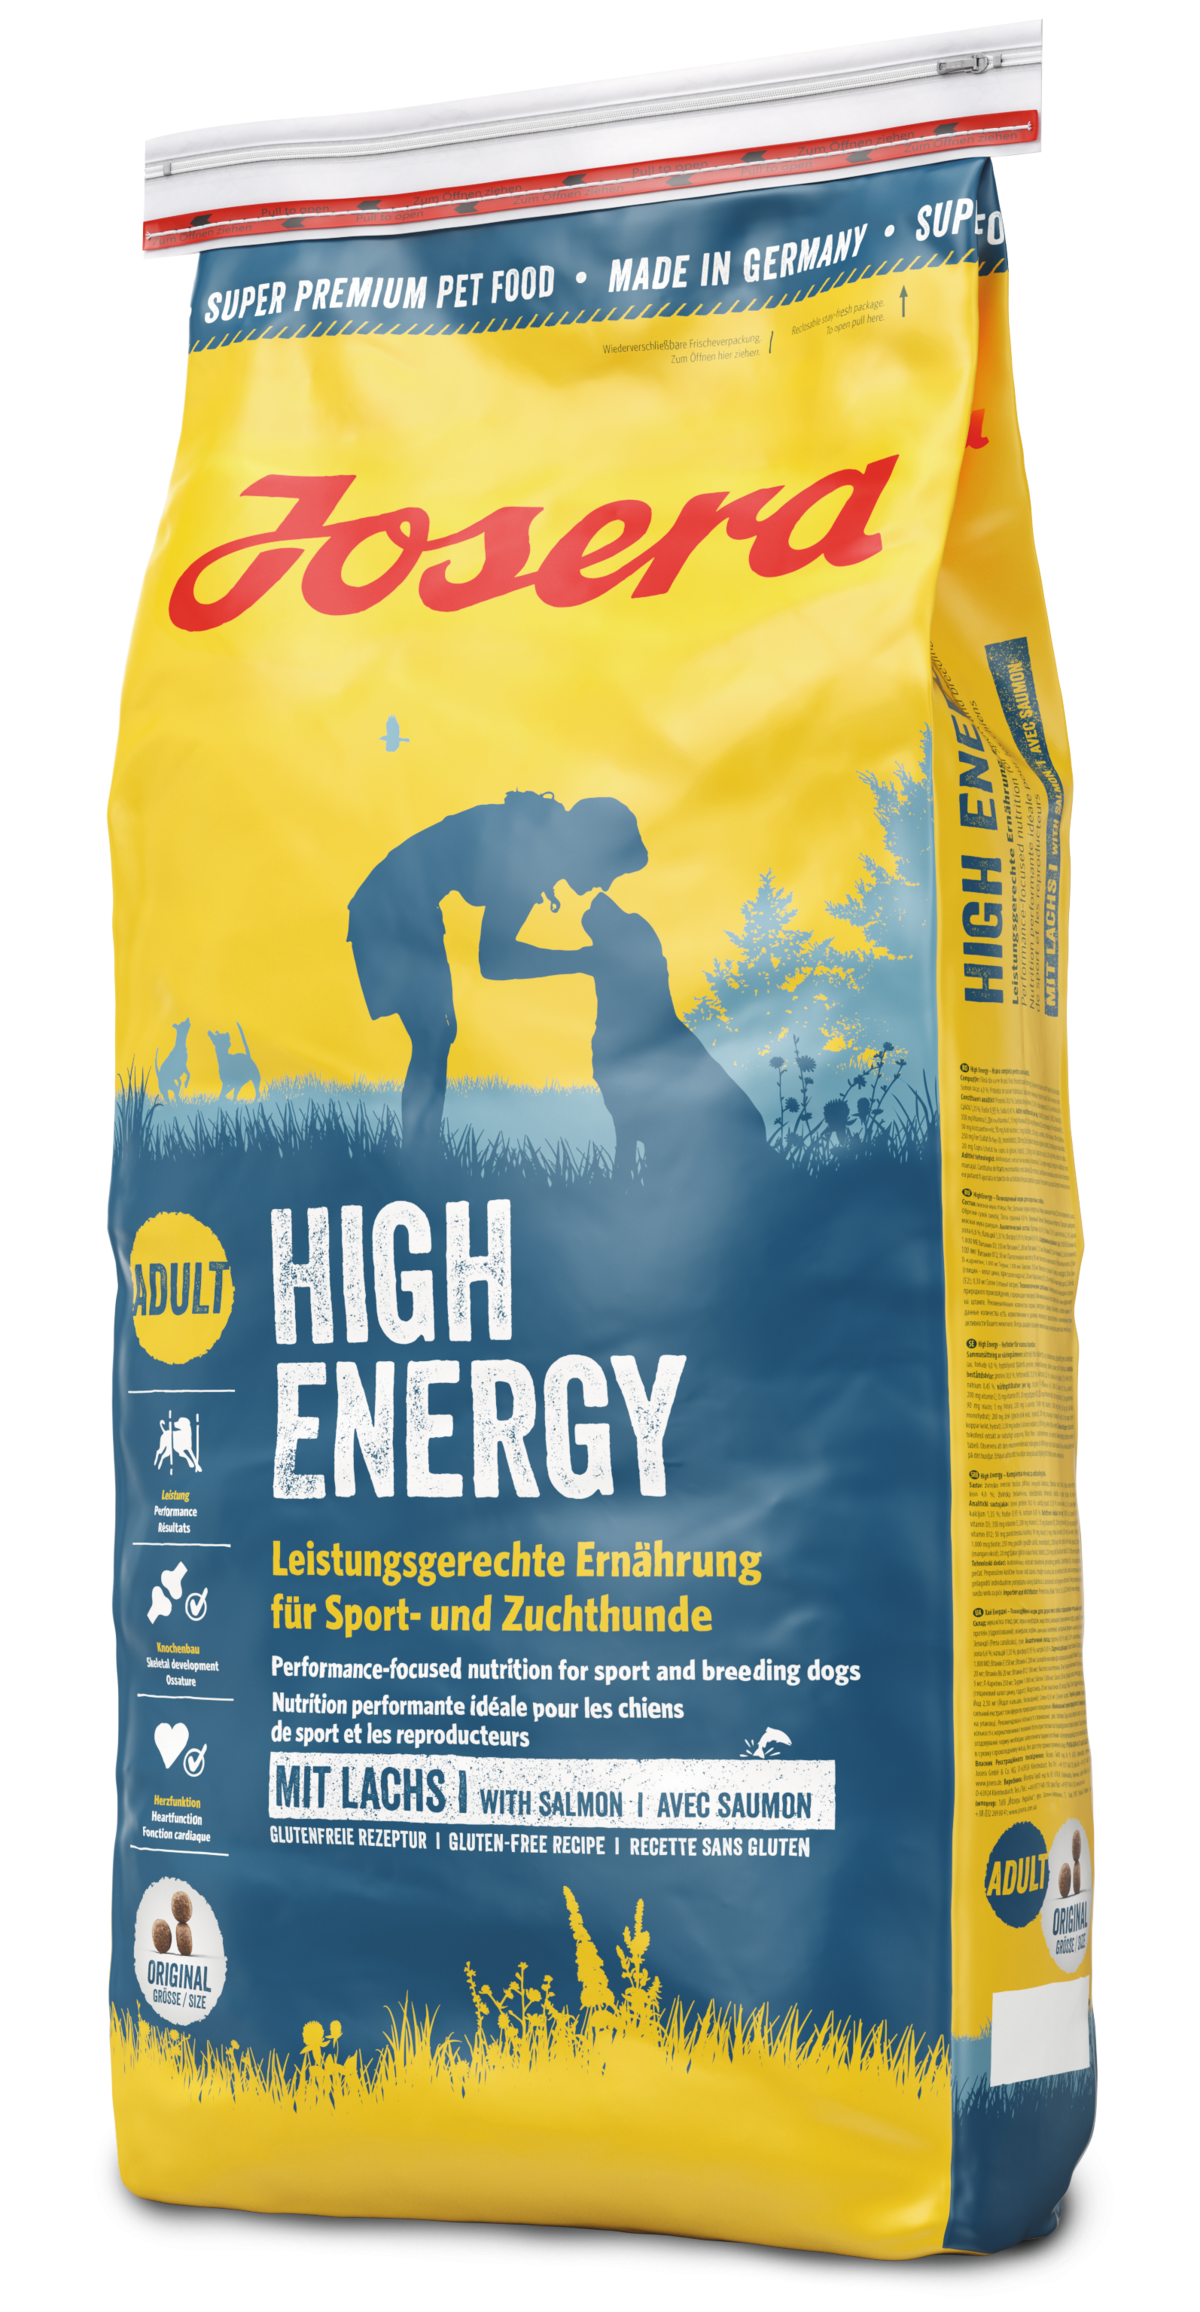 Josera High Energy - Energiereiche Ernährung für Leistungshunde 15kg